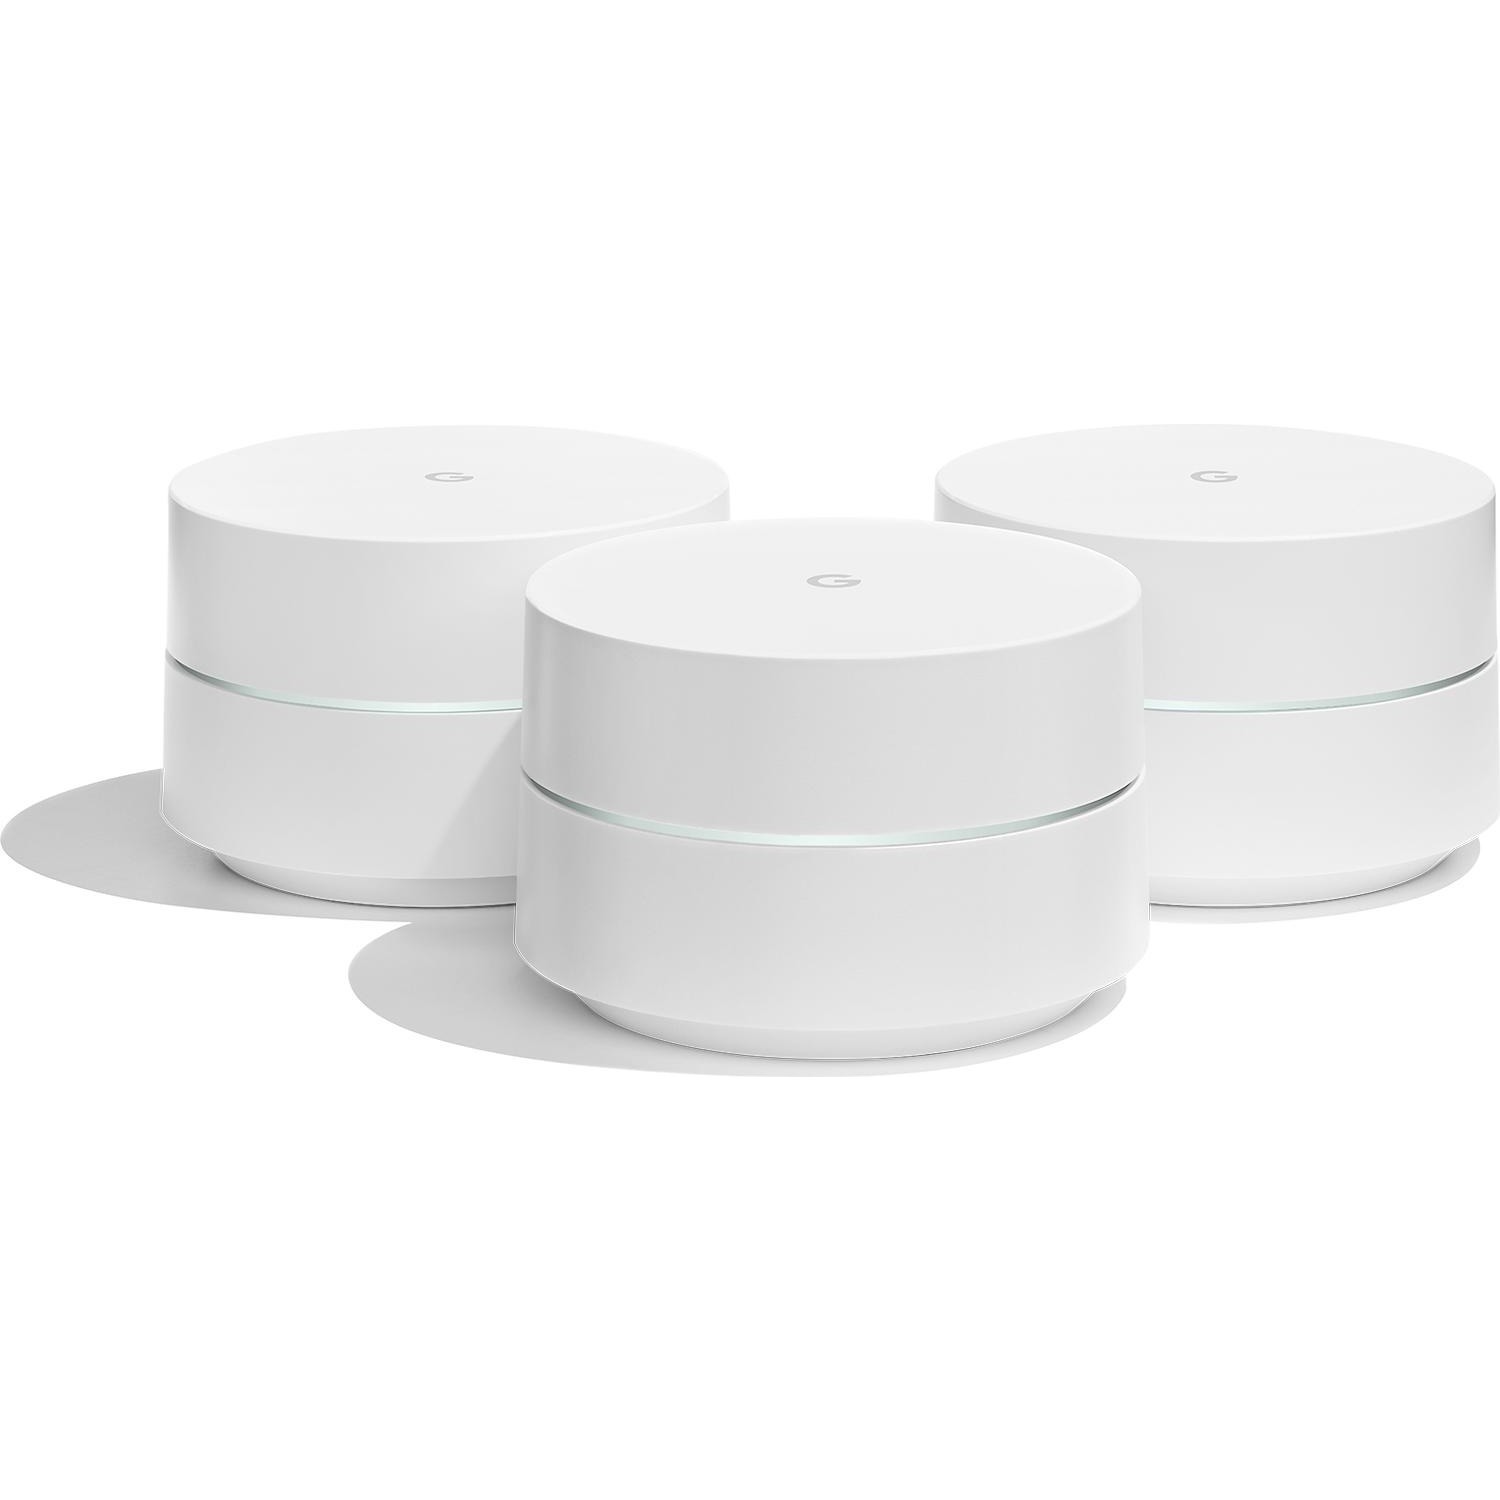 Immagine per Router Google Wi-Fi 3 pack da DIMOStore